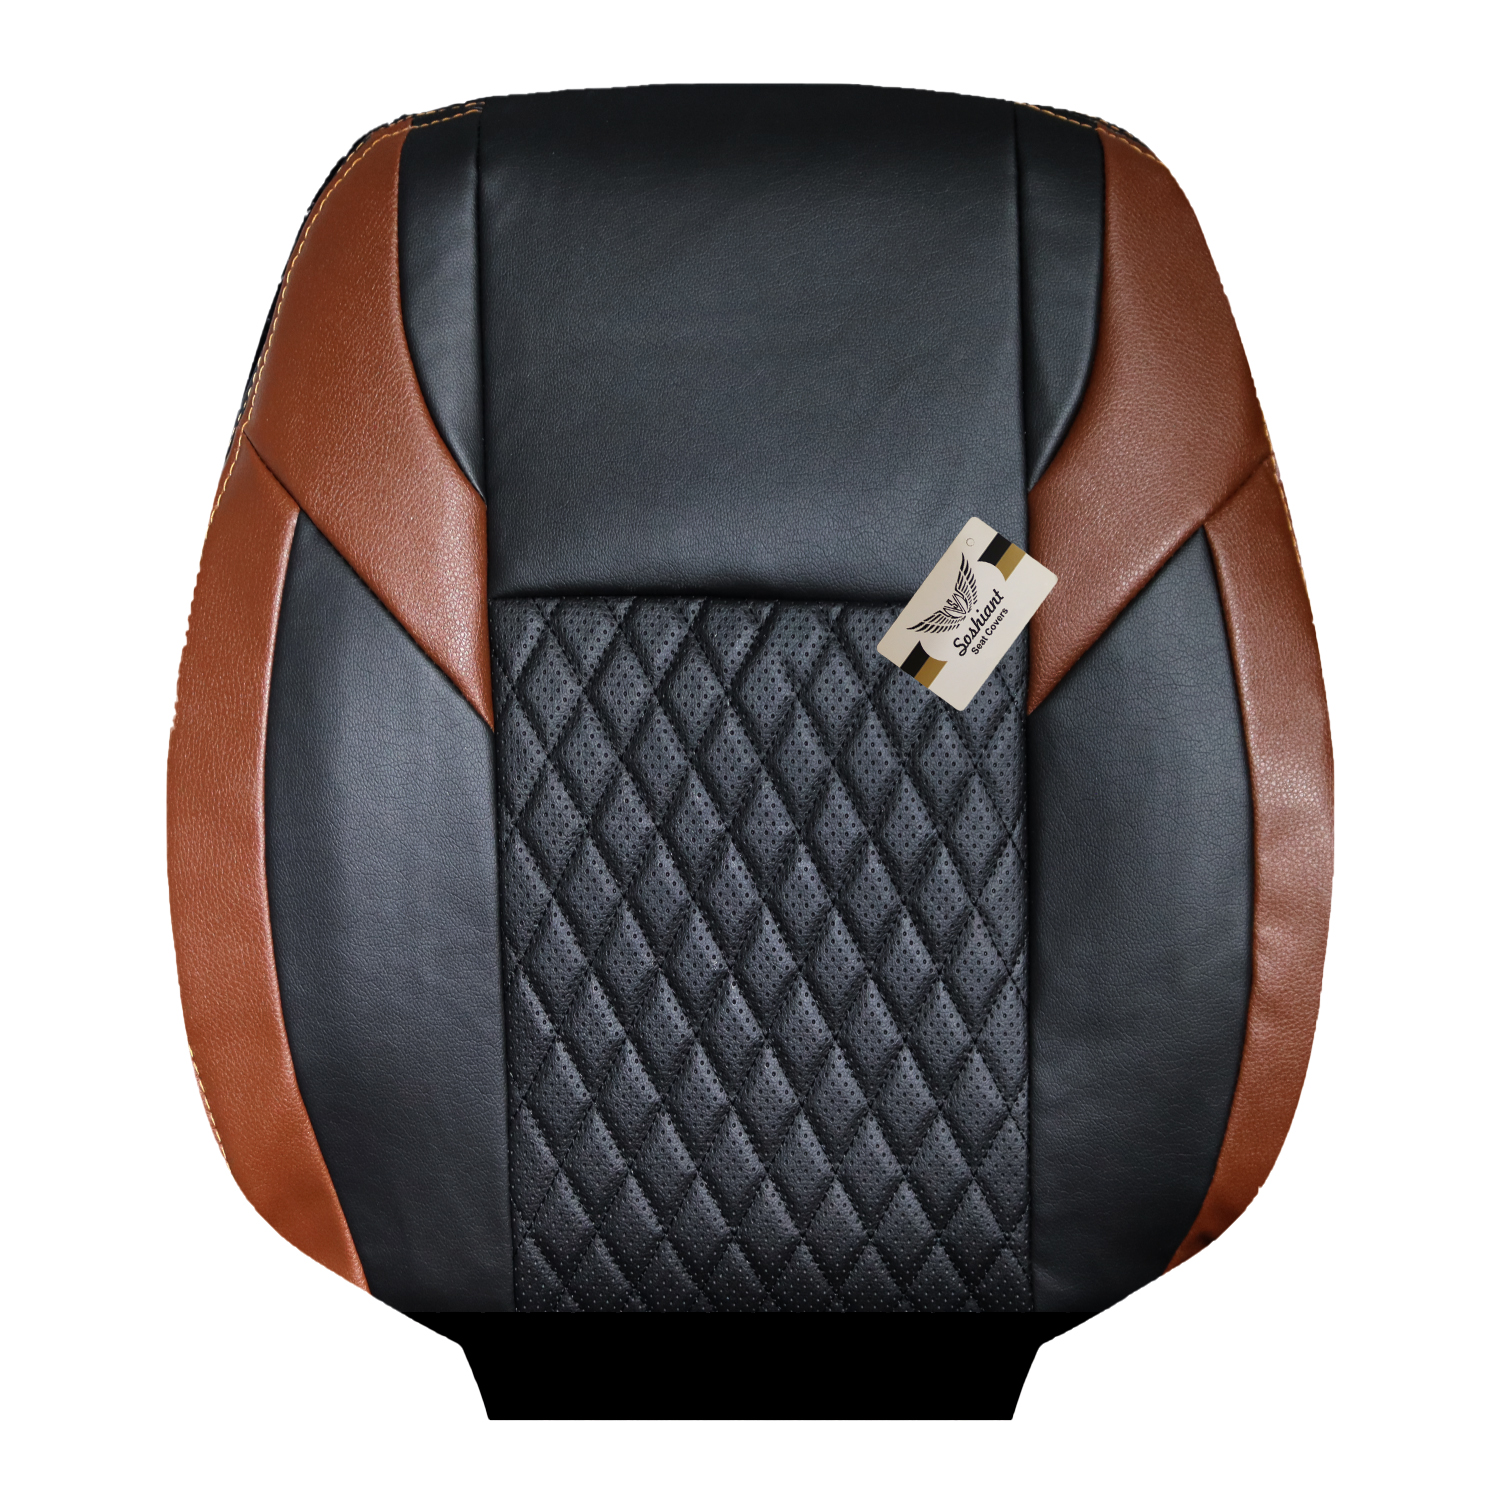 روکش صندلی خودرو سوشیانت مدل ممفیس مناسب برای پژو پرشیا